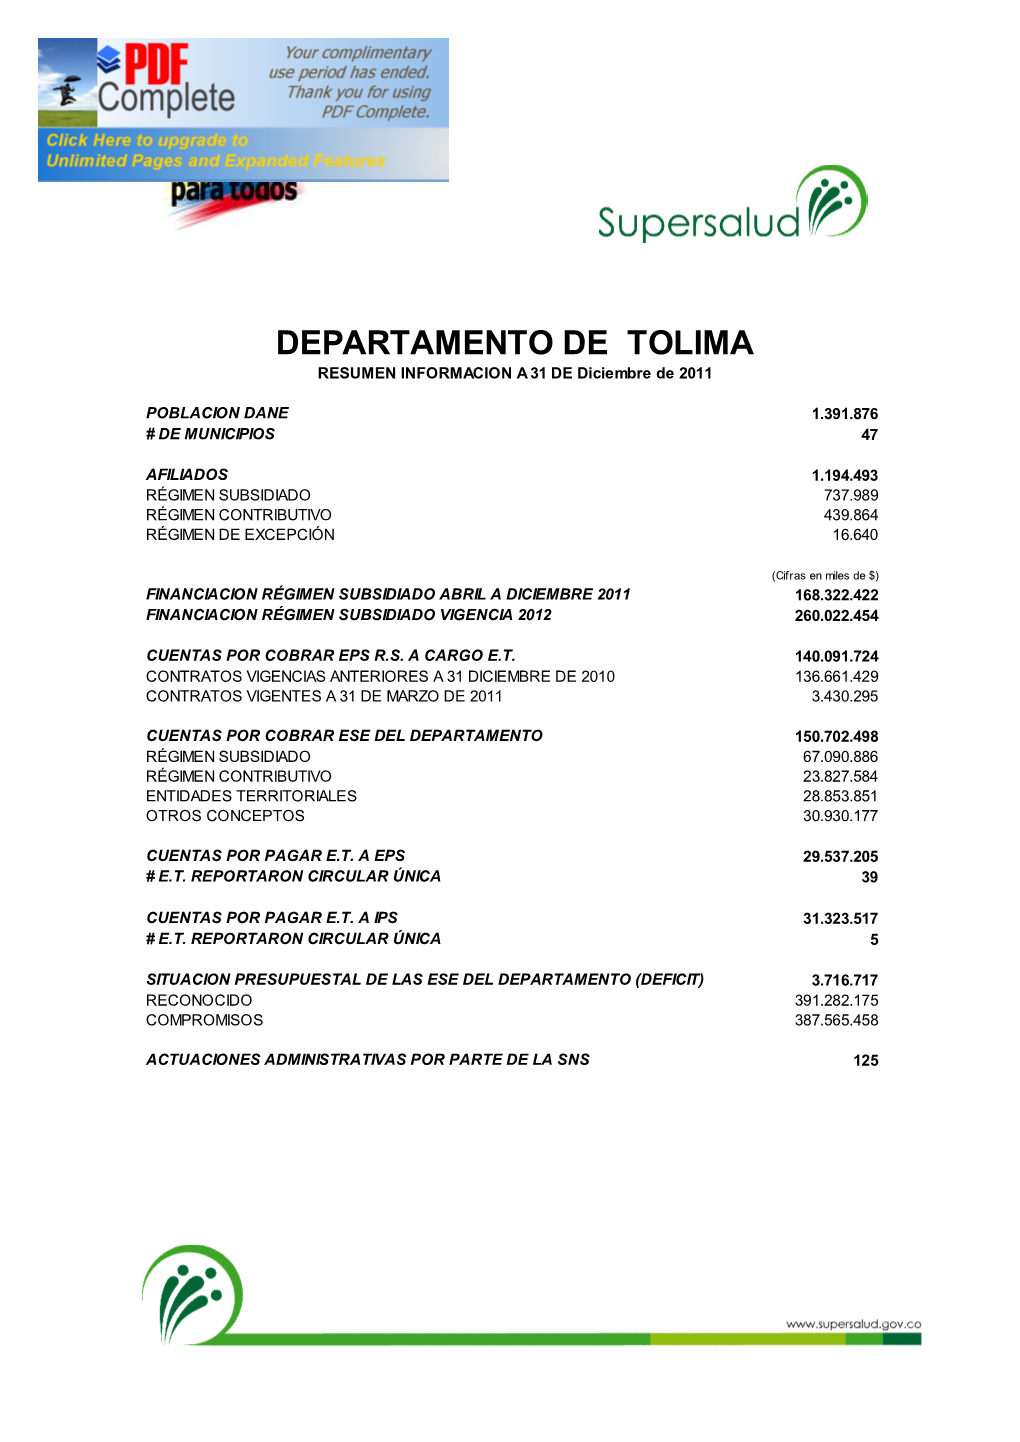 DEPARTAMENTO DE TOLIMA RESUMEN INFORMACION a 31 DE Diciembre De 2011